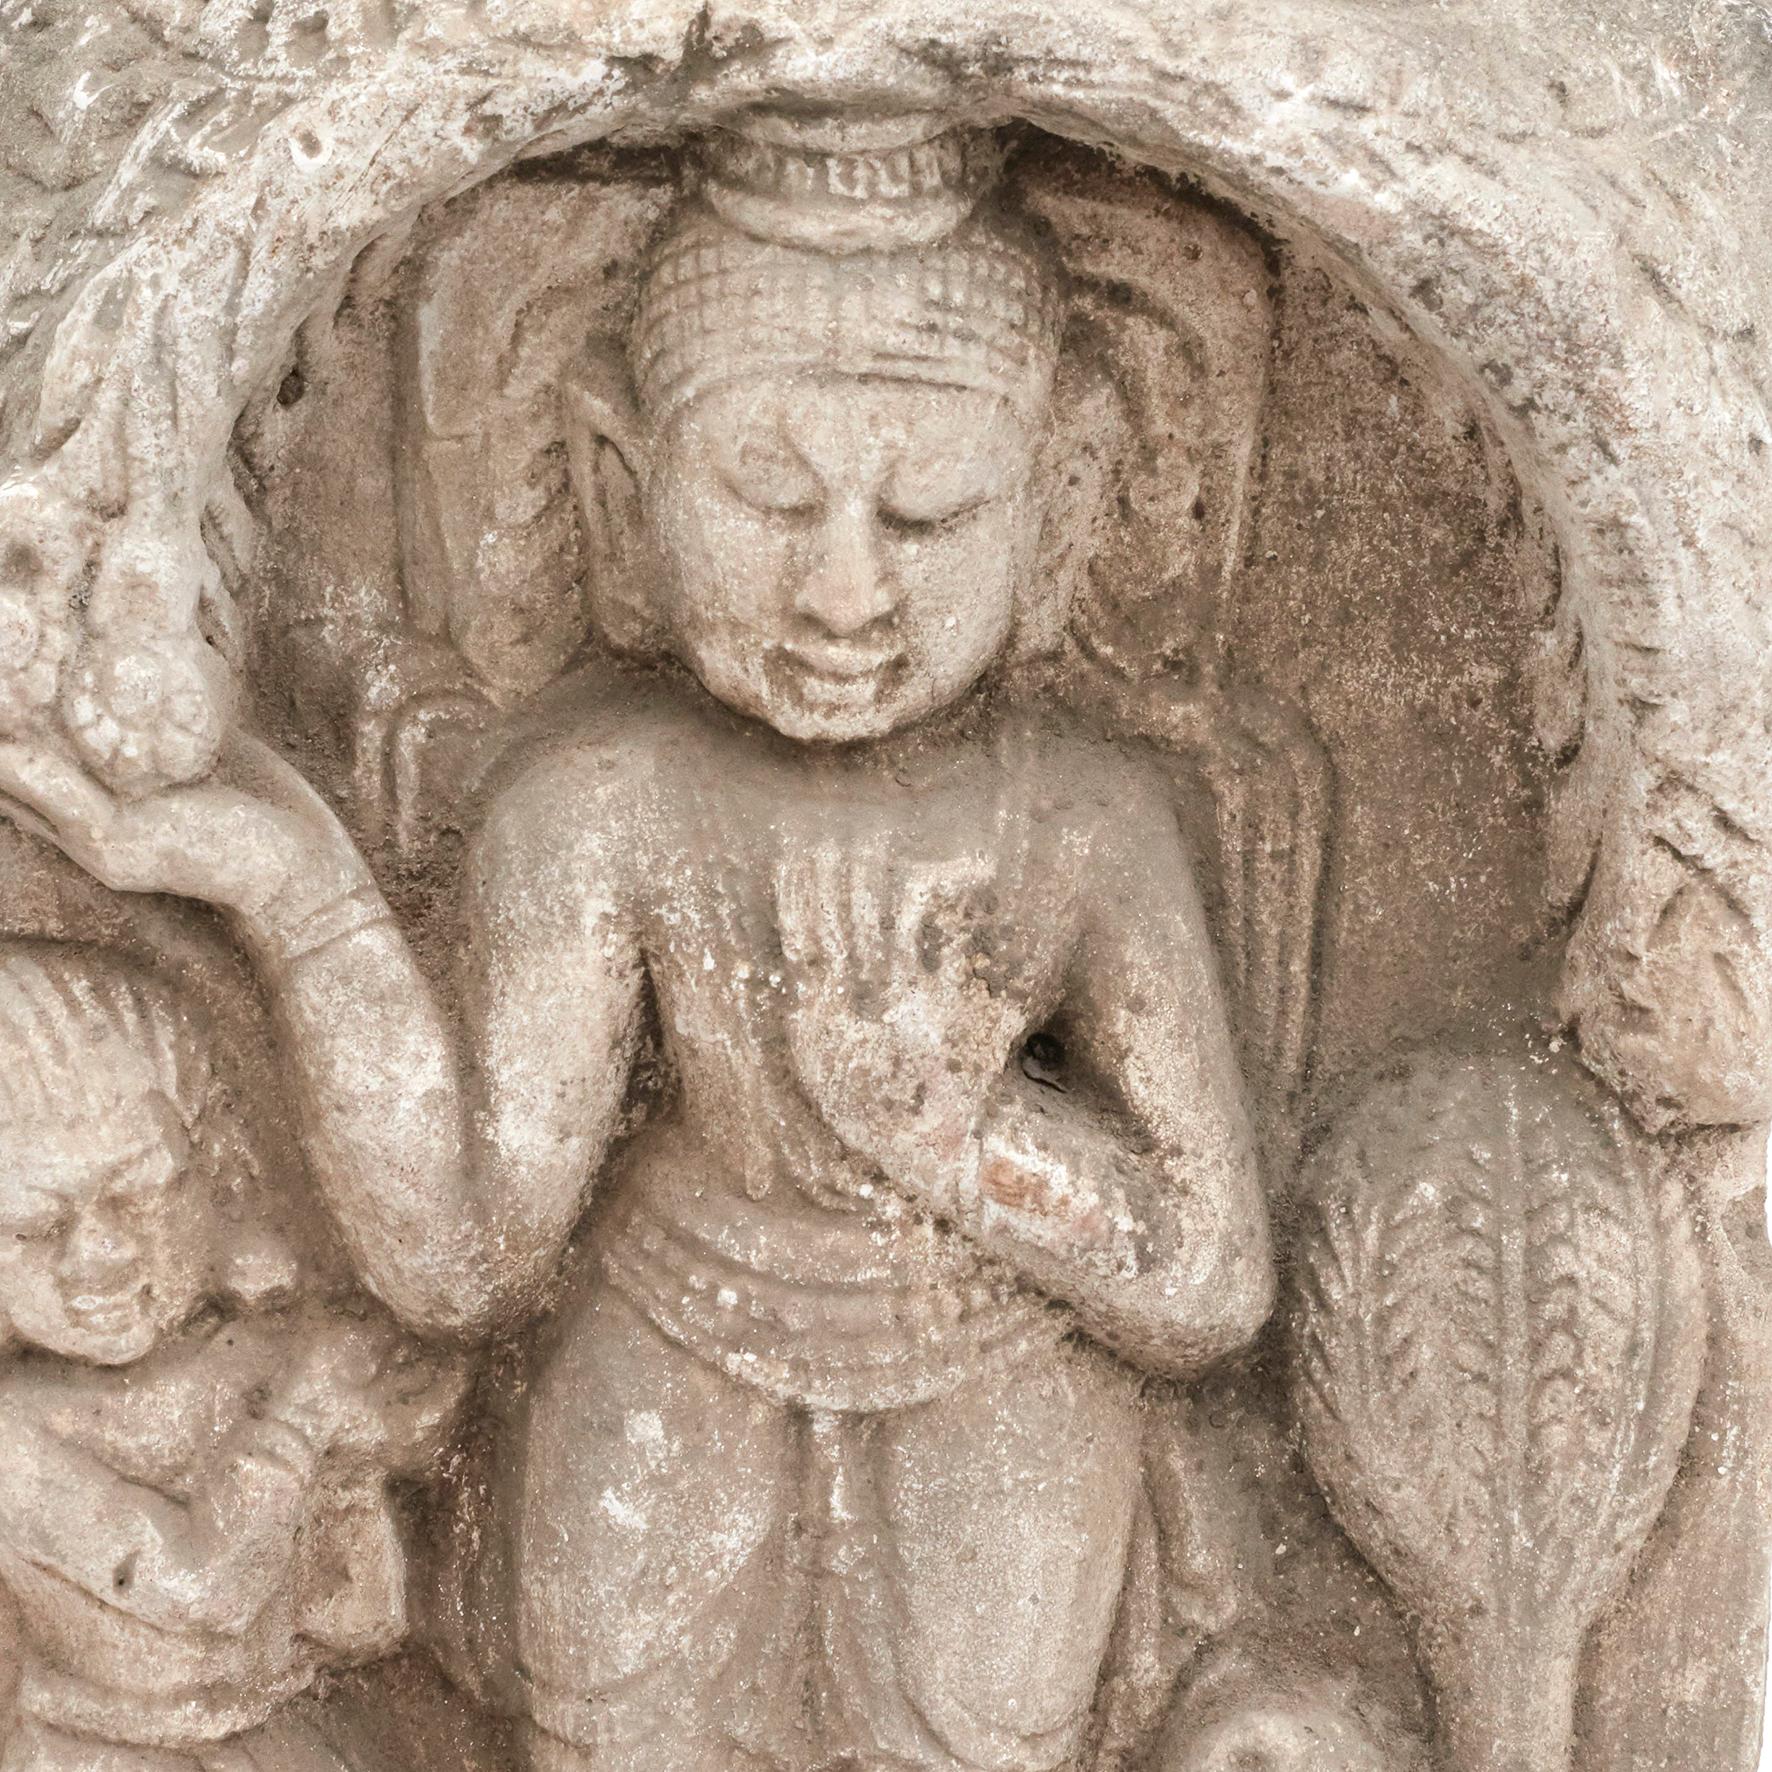 400-500 Jahre alte handgeschnitzte Sandsteinskulptur eines stehenden Buddhas, flankiert von einem Munk und einem Fabeltier.
Stammt von einer Pagode / einem Tempel in Arakan, einer geografischen Küstenregion im Süden Myanmars (Birma), um